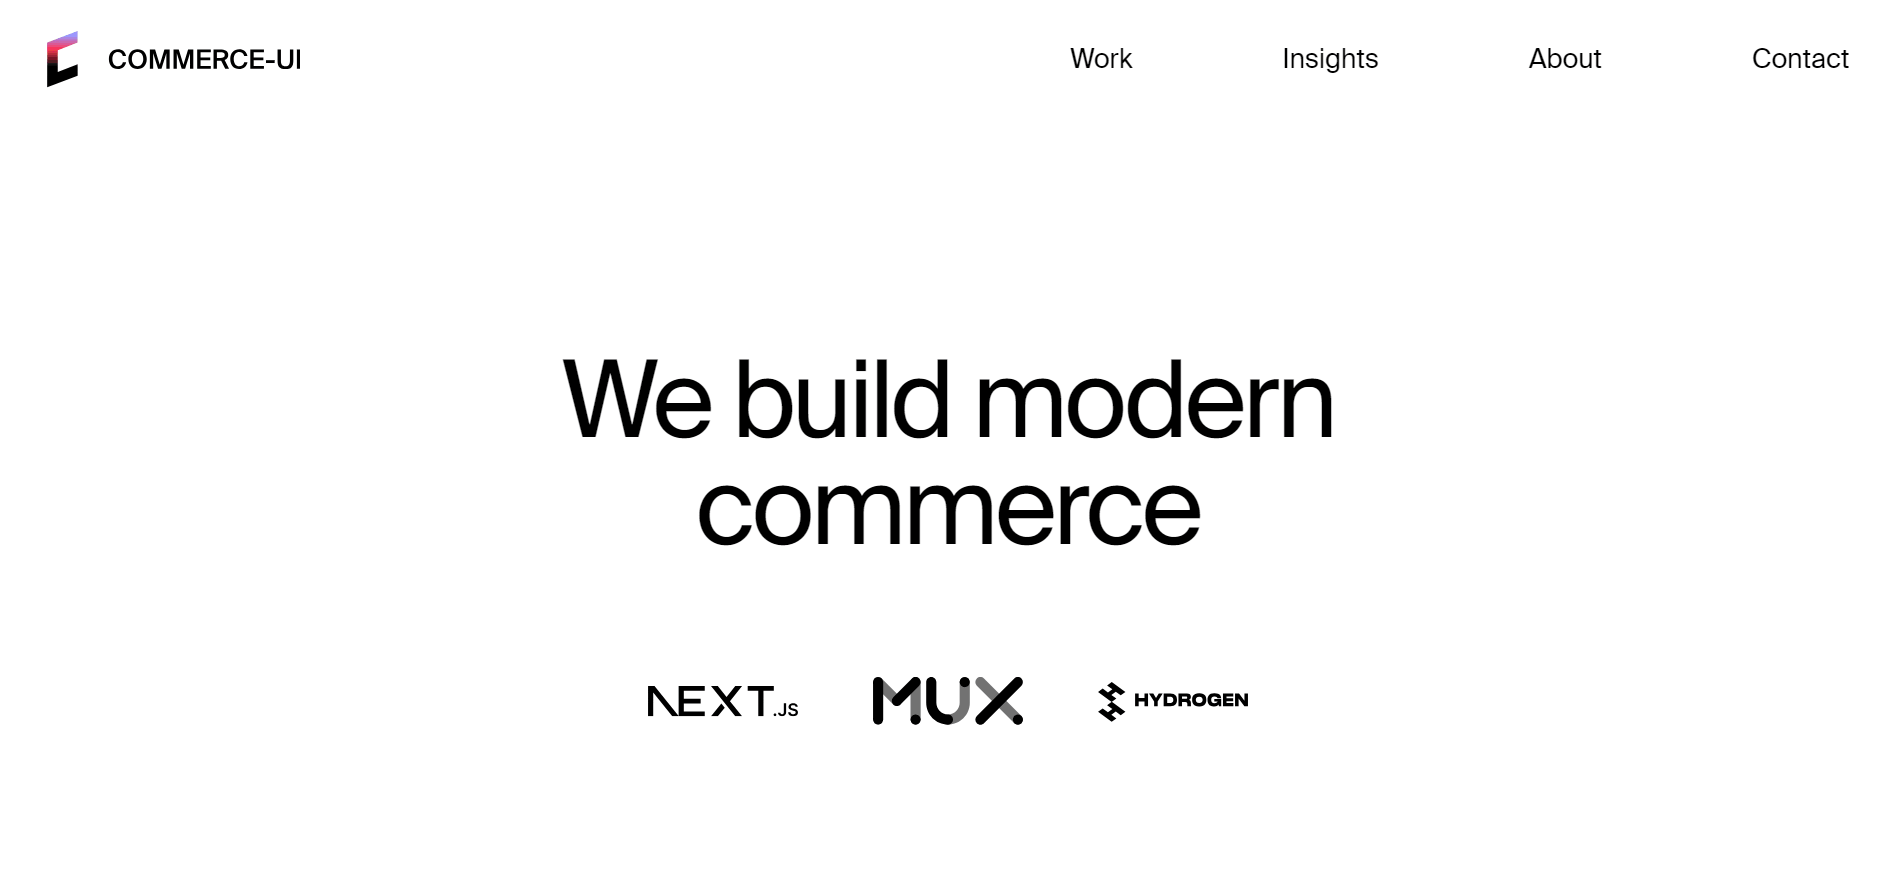 Commerce-ui’s website